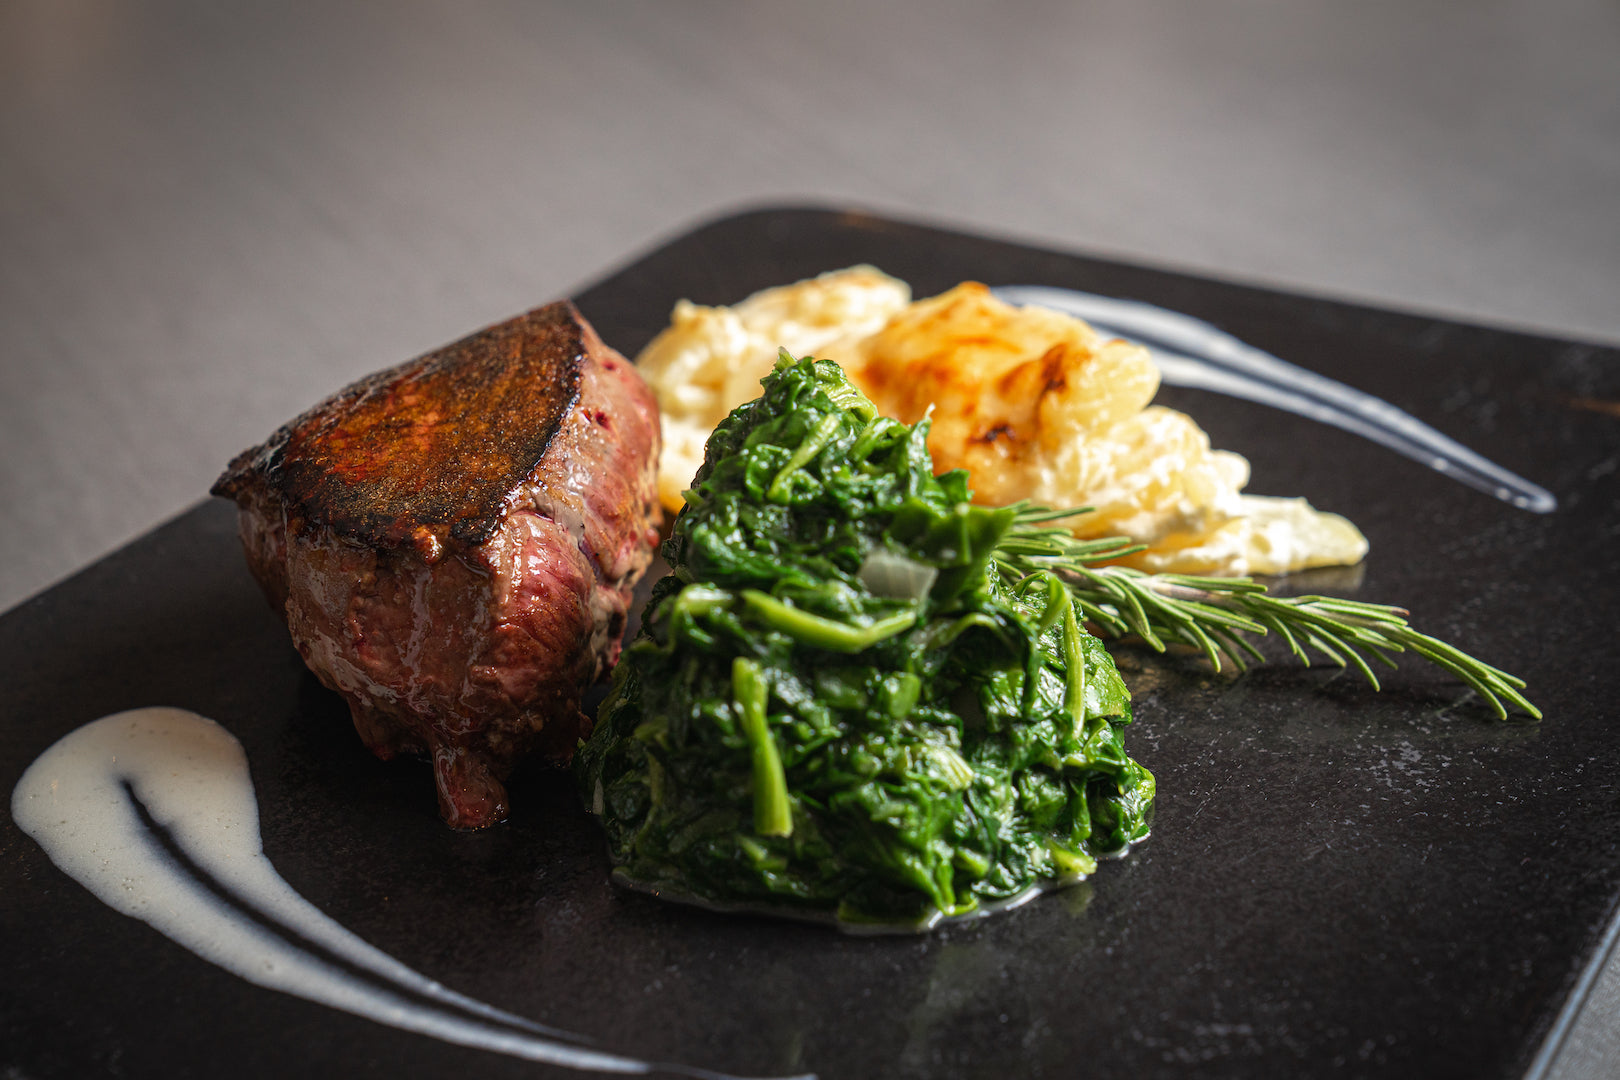 200g Australisches Hüft-Steak "Grain Feed" mit Kartoffelgratin, feiner Trüffel-Sauce und Baby-Spinat